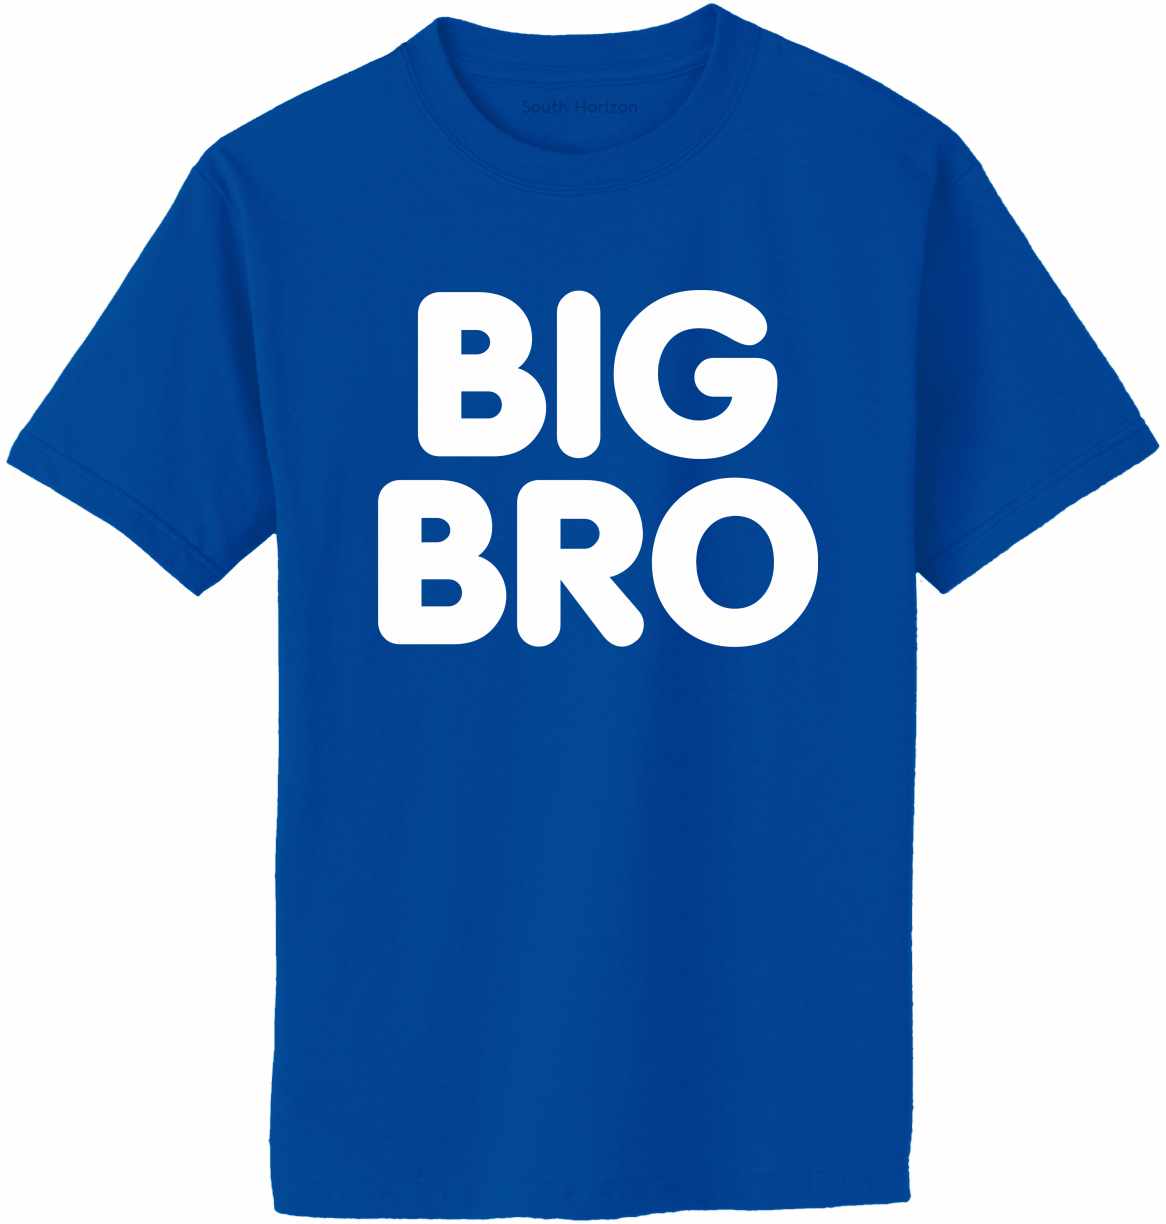 BIG BRO on Adult T-Shirt